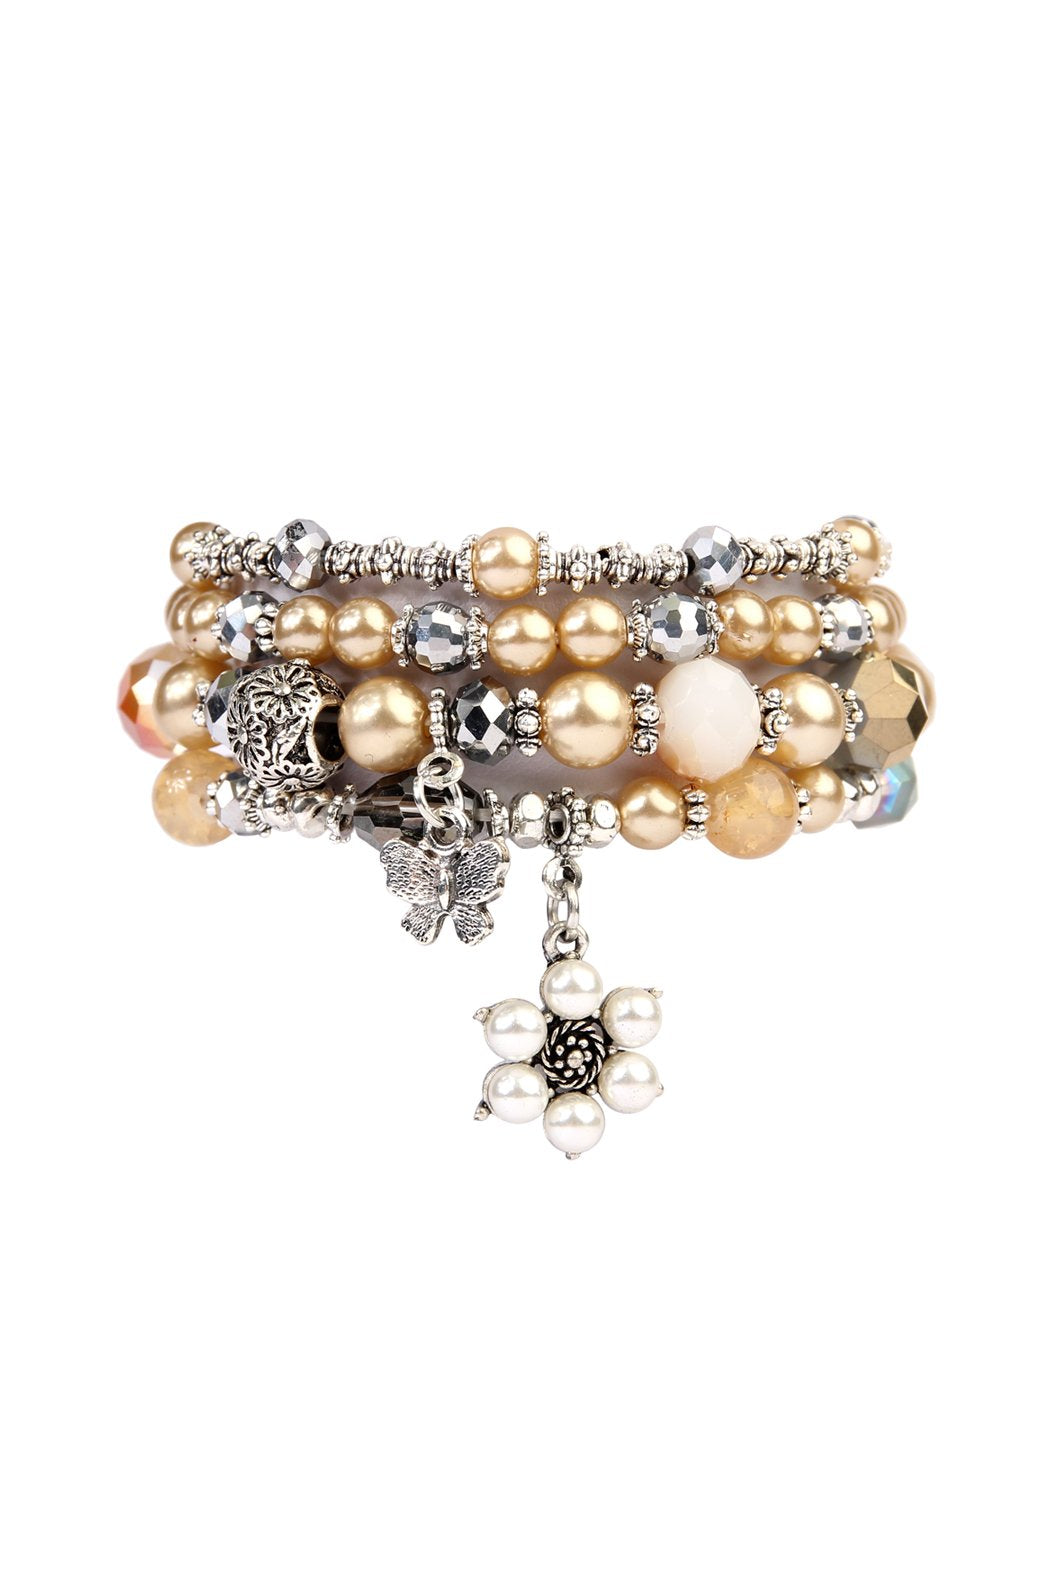 Hdb2076 - Butterfly Pearl Classy Stackable Bracelet - LOLA LUXE